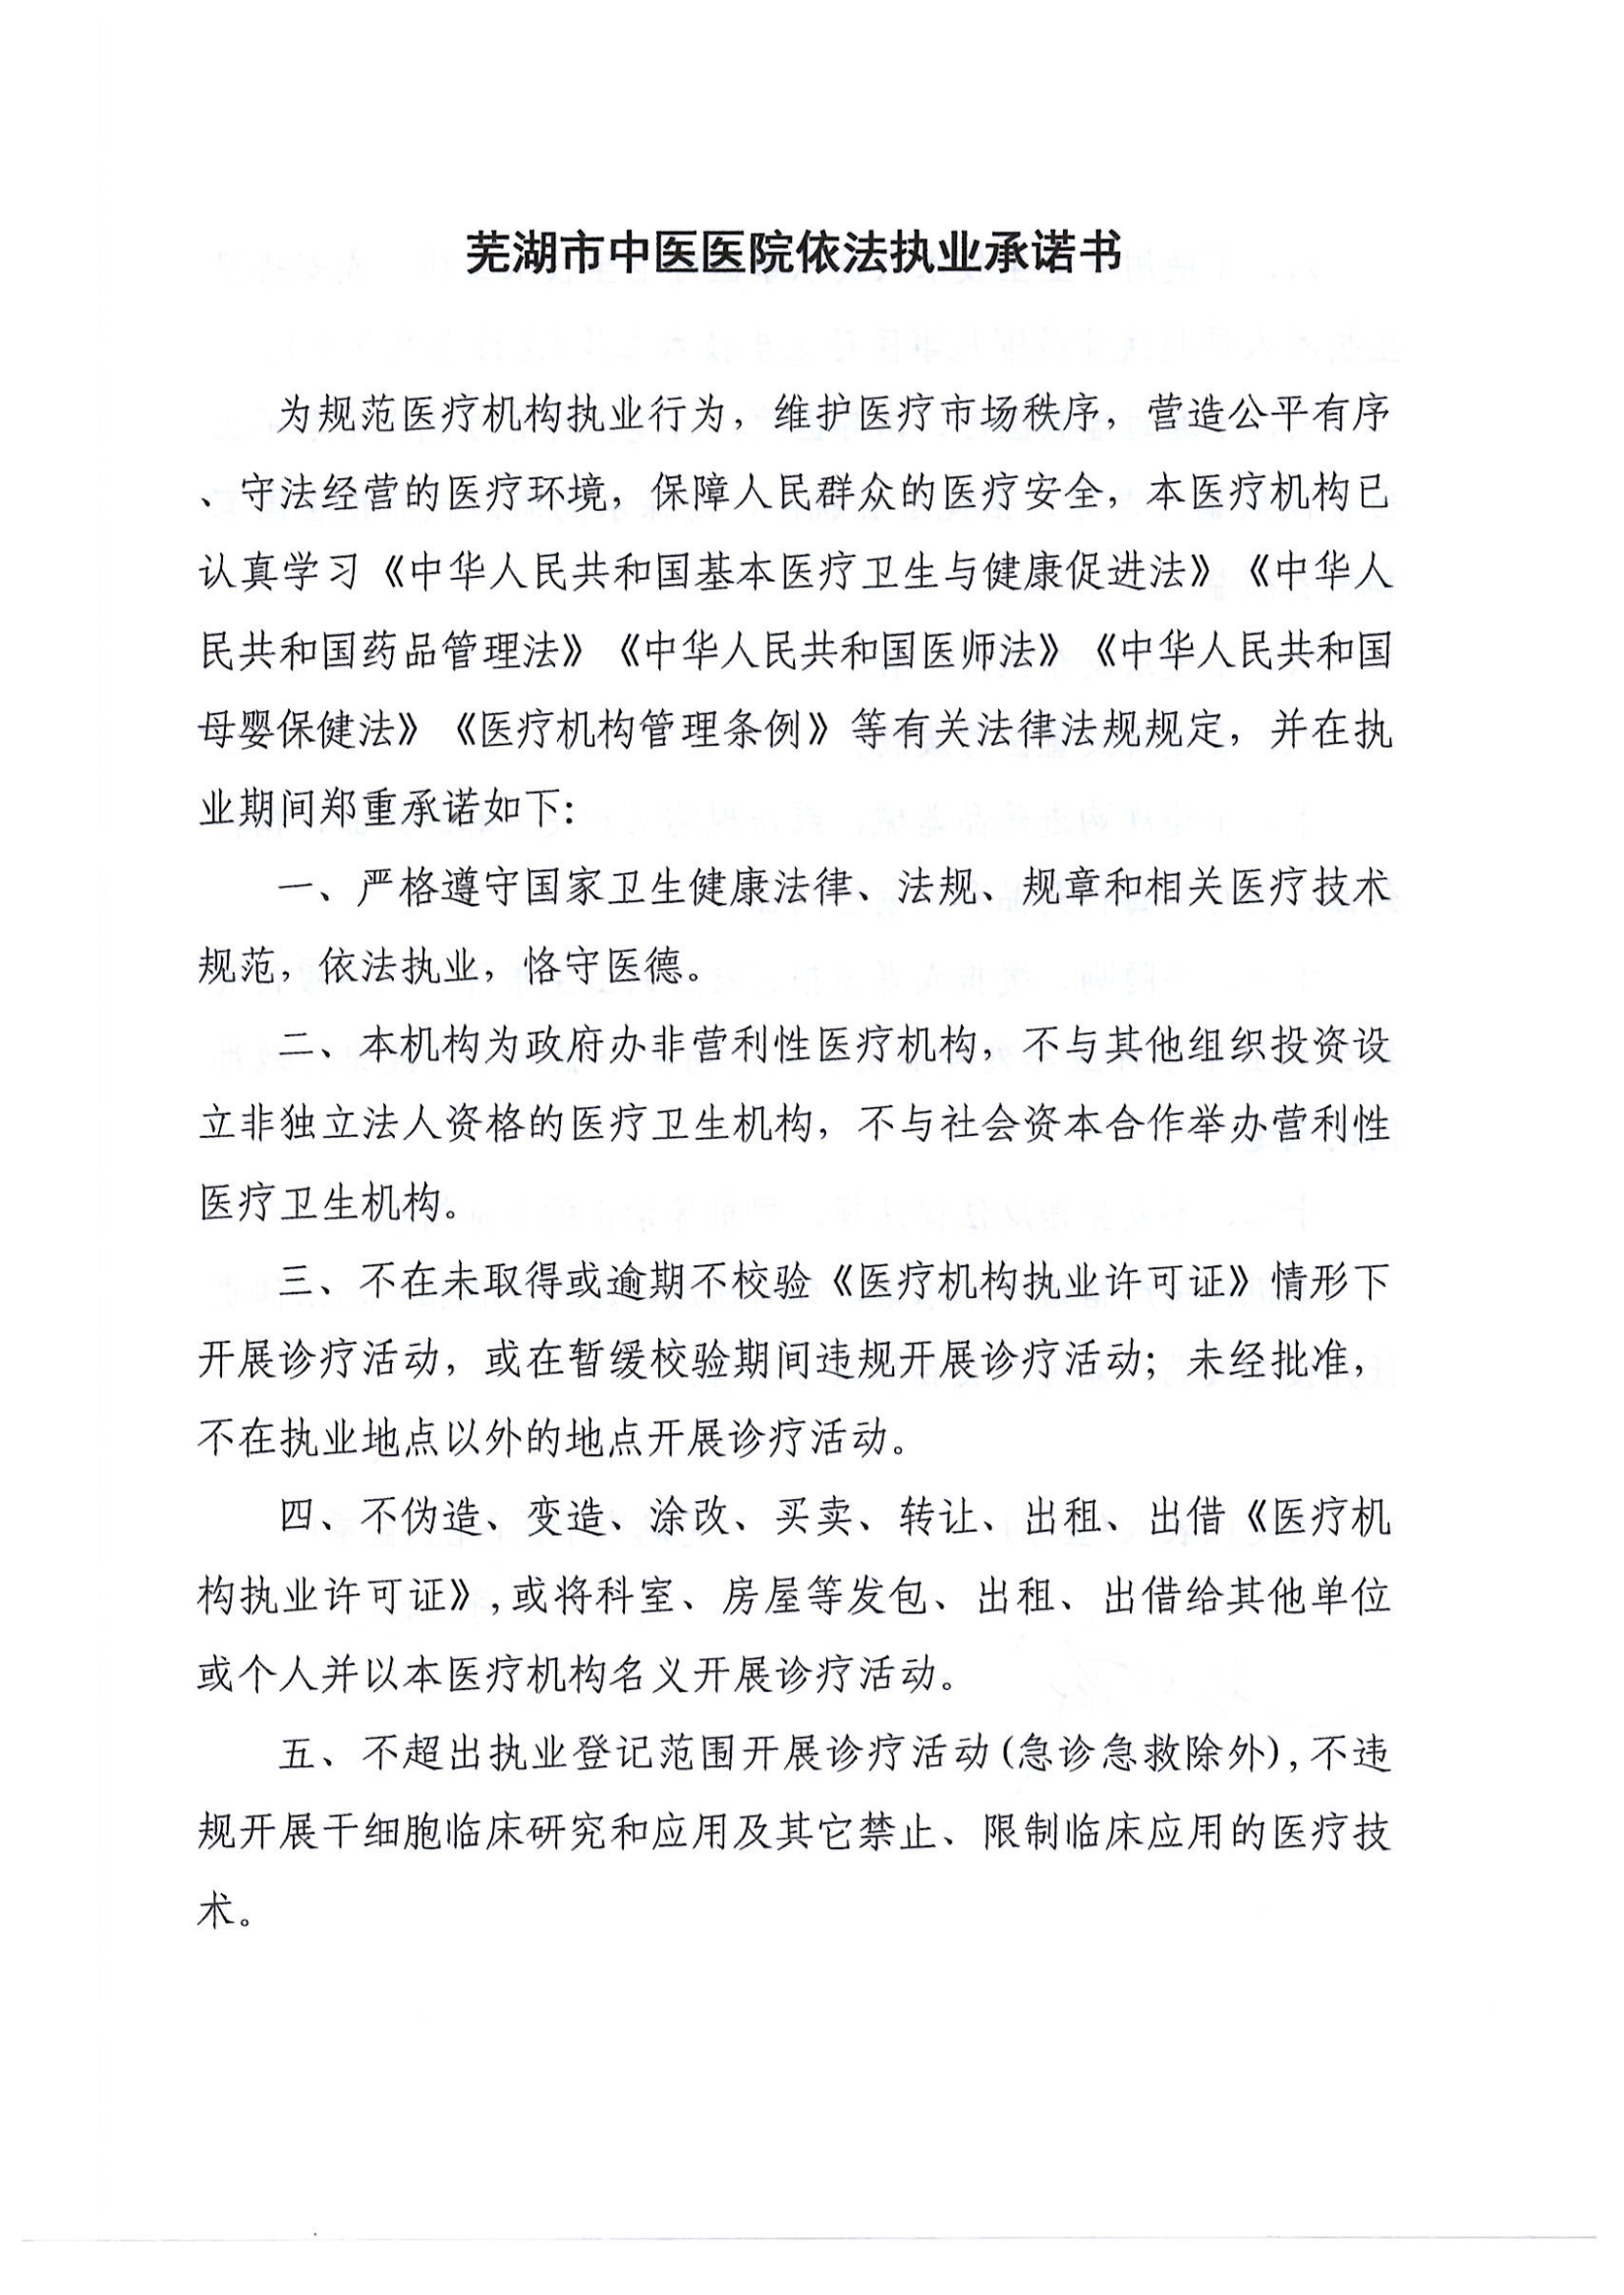 芜湖市中医医院依法执业承诺书 23.6.9 行风 依法_00.png